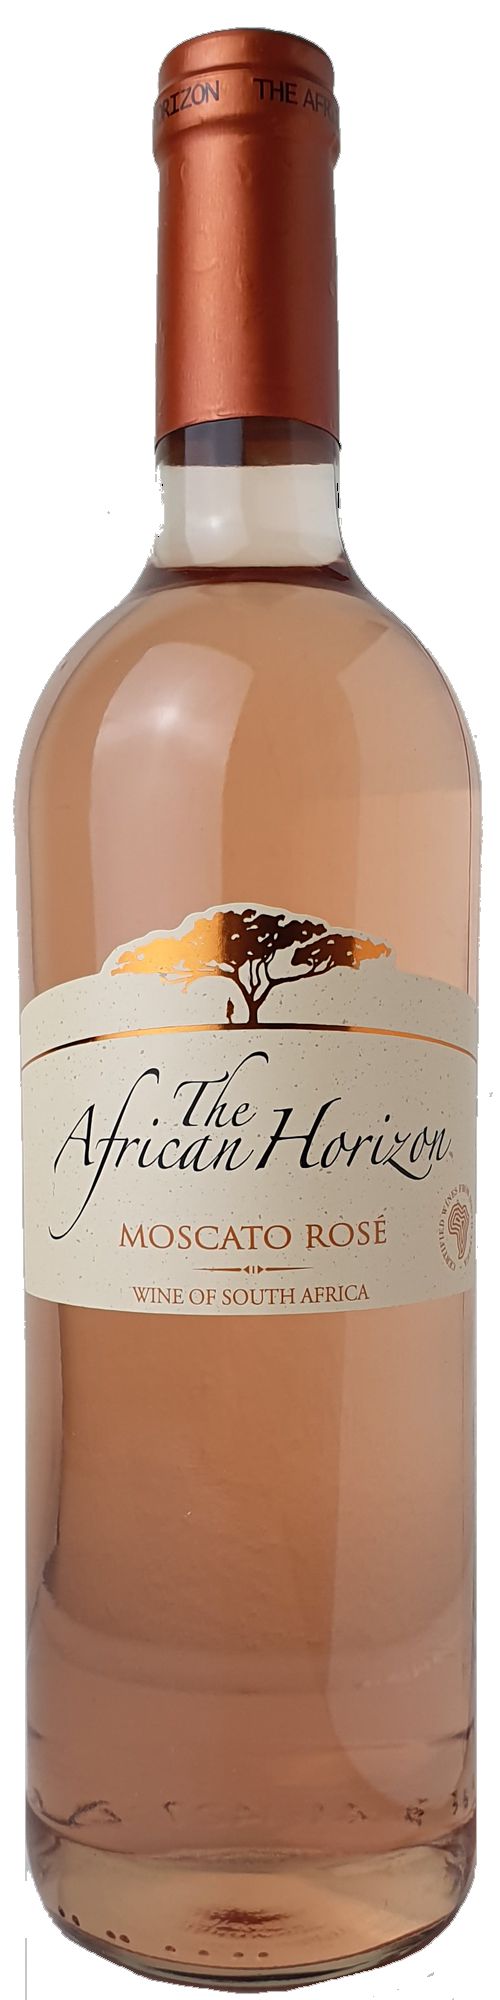 African Horizon Moscato Rose Sweet, Reinwarth – Westkap Steffen Weinagentur